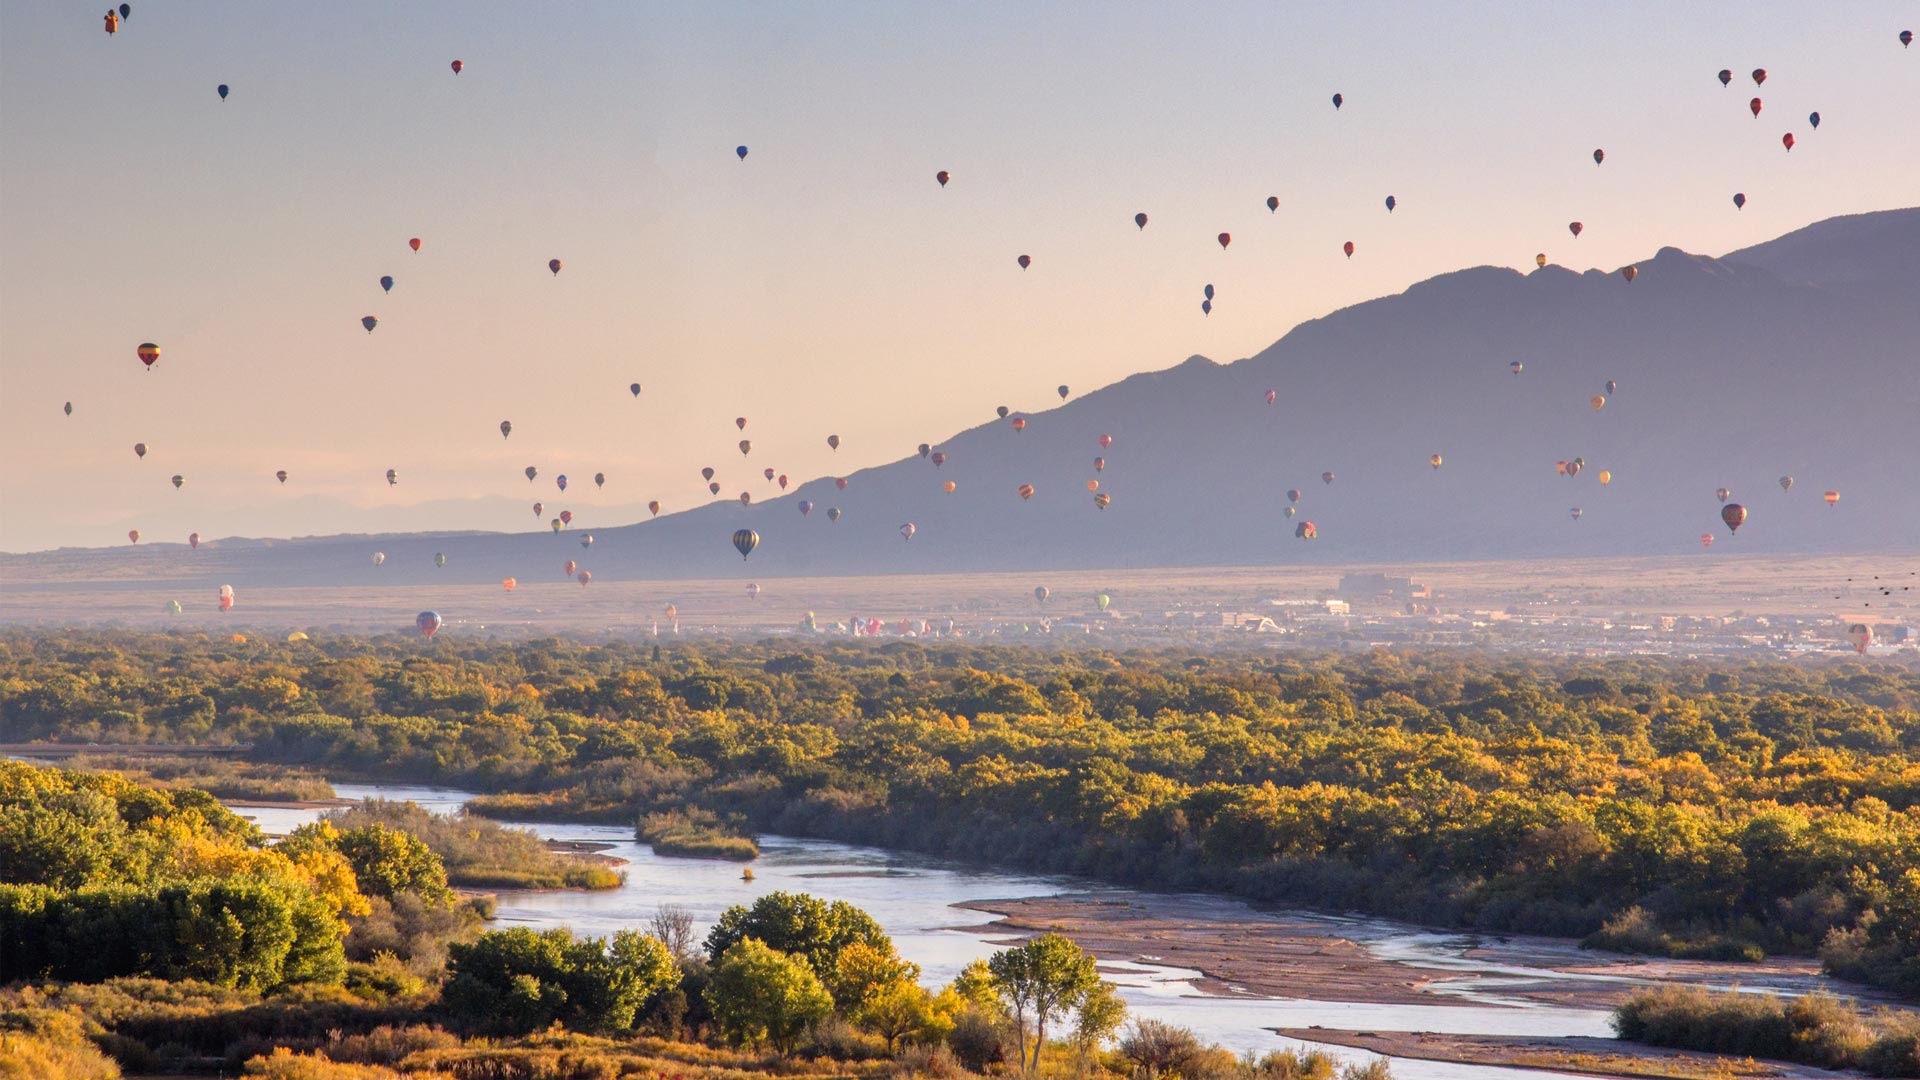 Hot air balloons over the Rio Grande